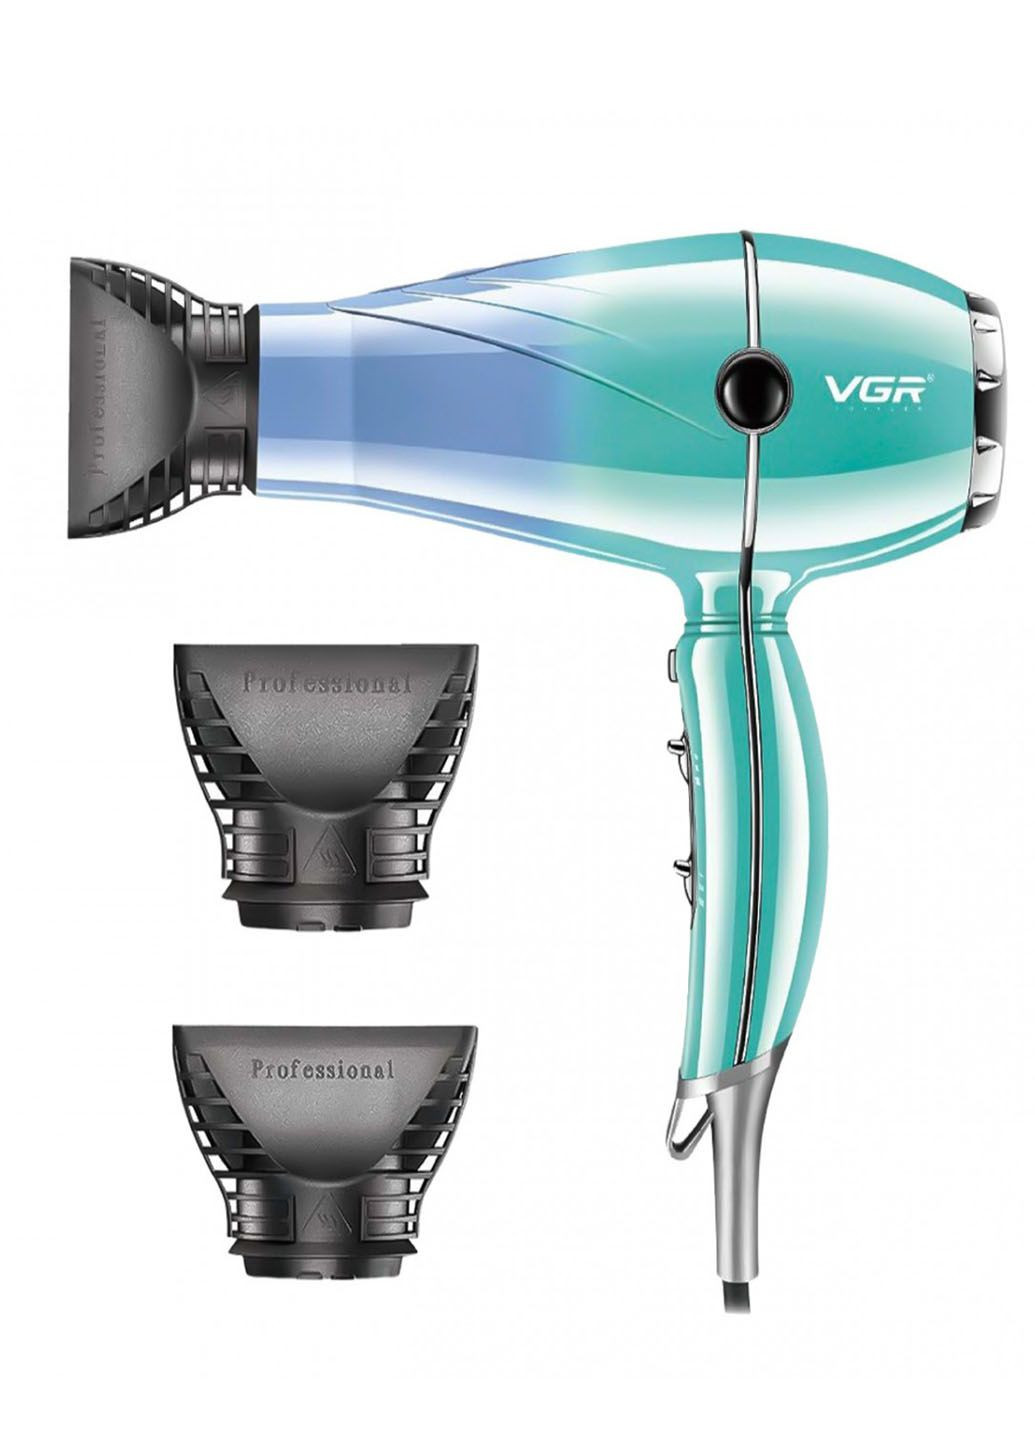 Професійний фен для висушування та укладки волосся професійний з двома концентраторами 2400 Вт VGR v-452 (284280693)